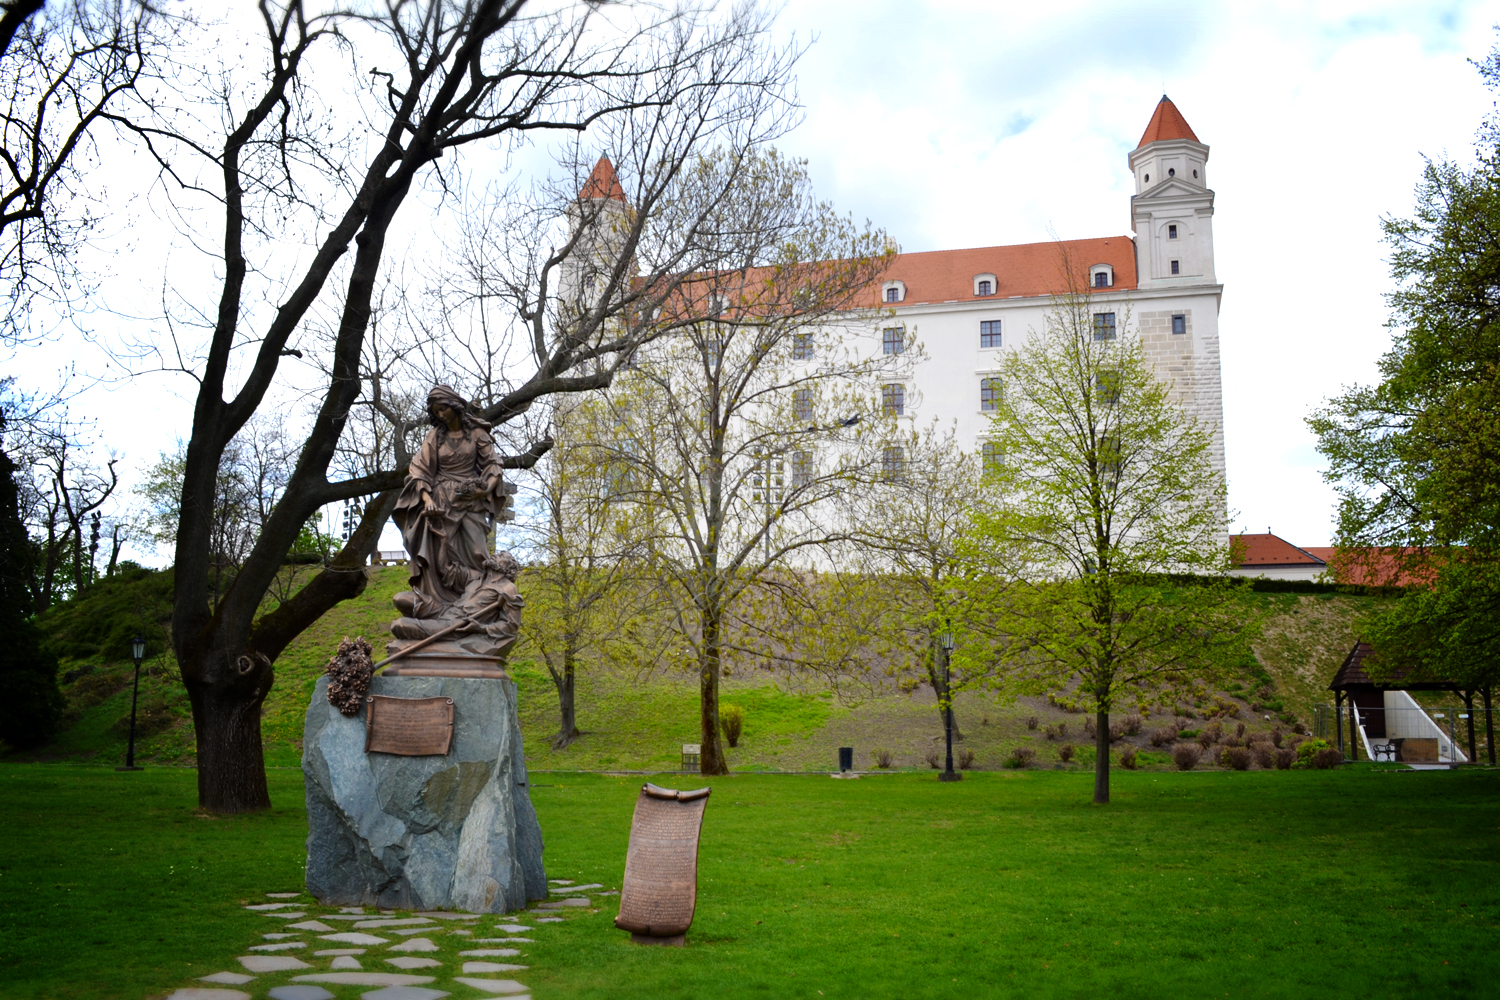 Bratislava Castle grounds